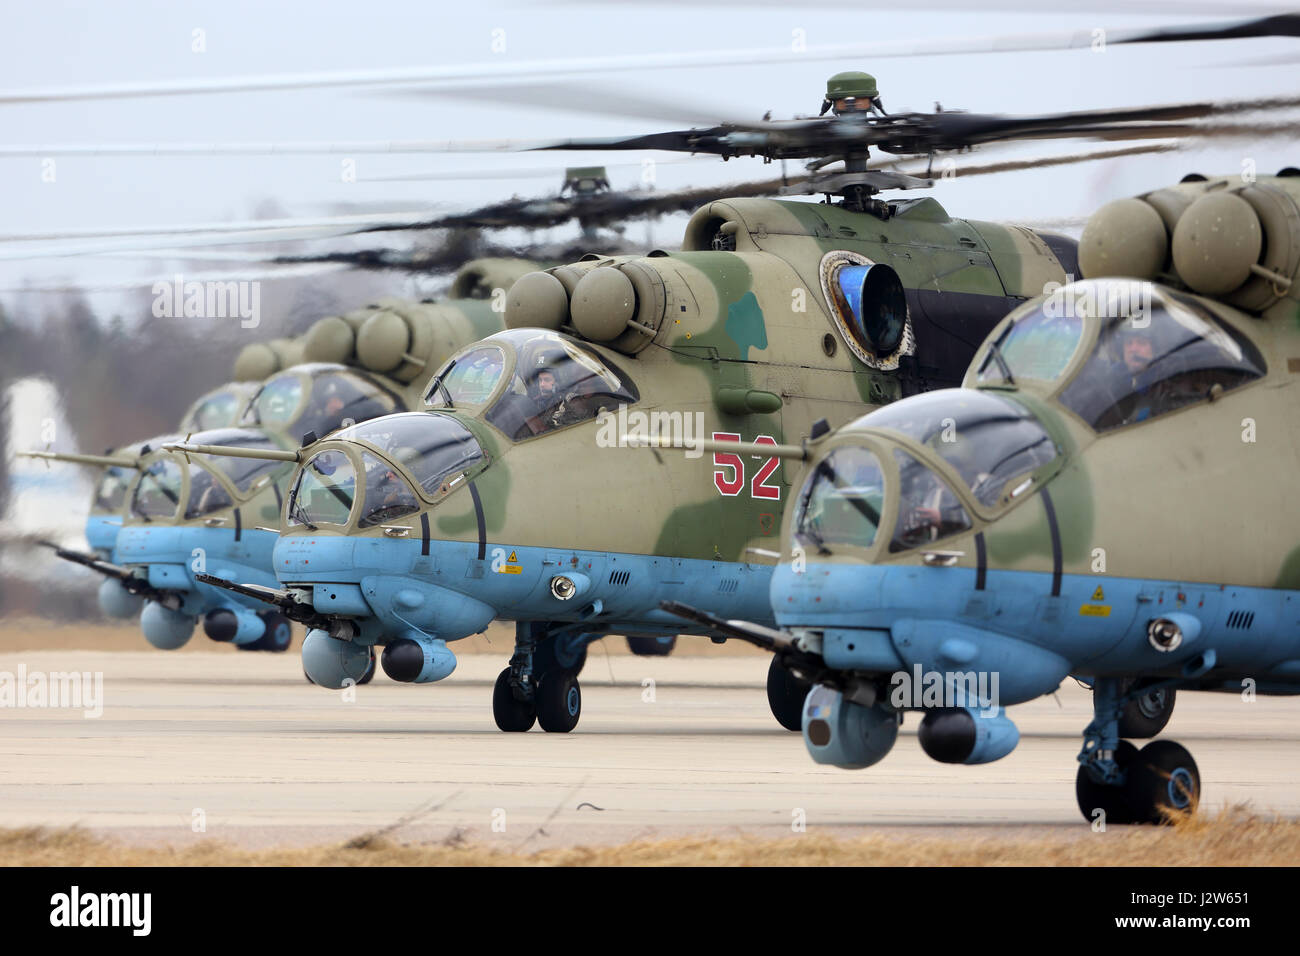 KUBINKA, MOSCOW REGION, Russland - 10. April 2017: Mil Mi - 35 M RF-13028 Kampfhubschrauber der russischen Luftwaffe während der Victory Day Parade Proben bei Ku Stockfoto